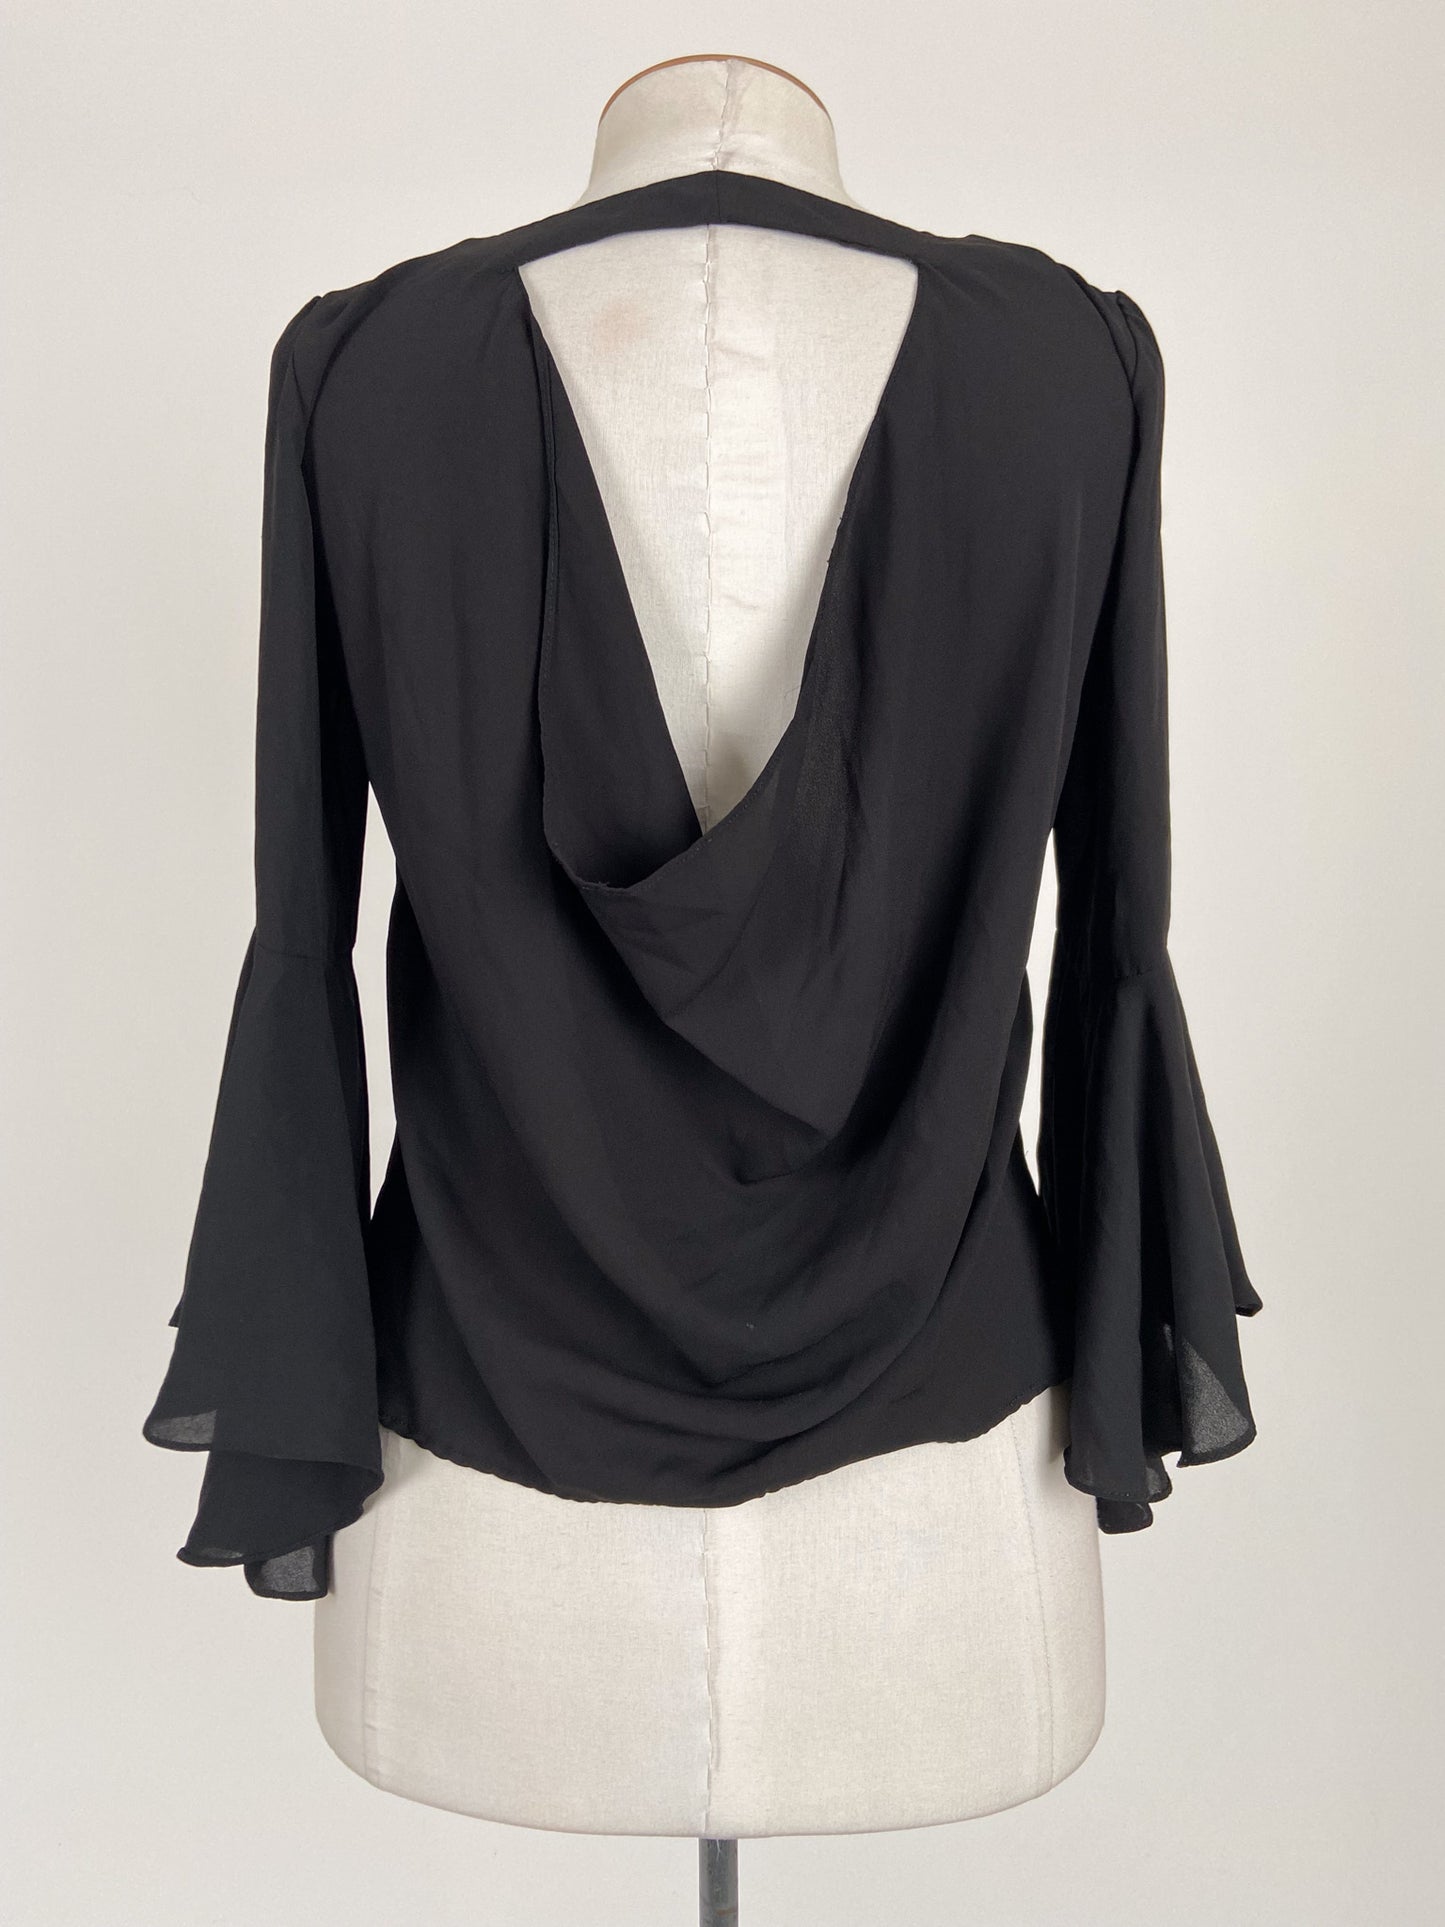 Zara | Black Workwear Top | Size M